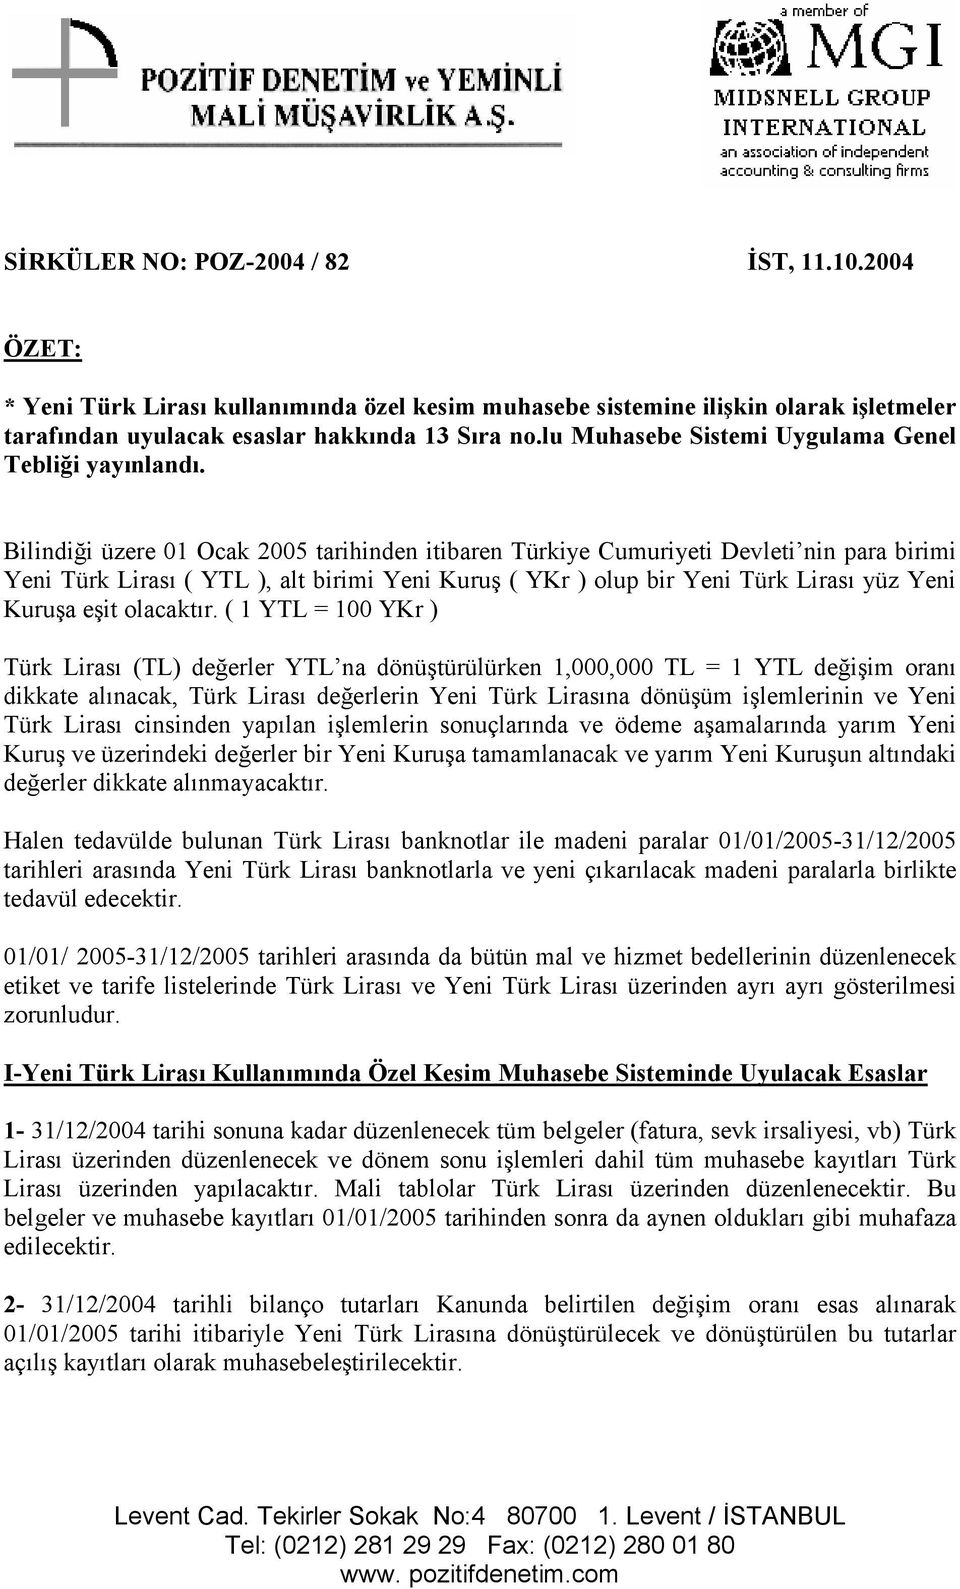 Bilindiği üzere 01 Ocak 2005 tarihinden itibaren Türkiye Cumuriyeti Devleti nin para birimi Yeni Türk Lirası ( YTL ), alt birimi Yeni Kuruş ( YKr ) olup bir Yeni Türk Lirası yüz Yeni Kuruşa eşit